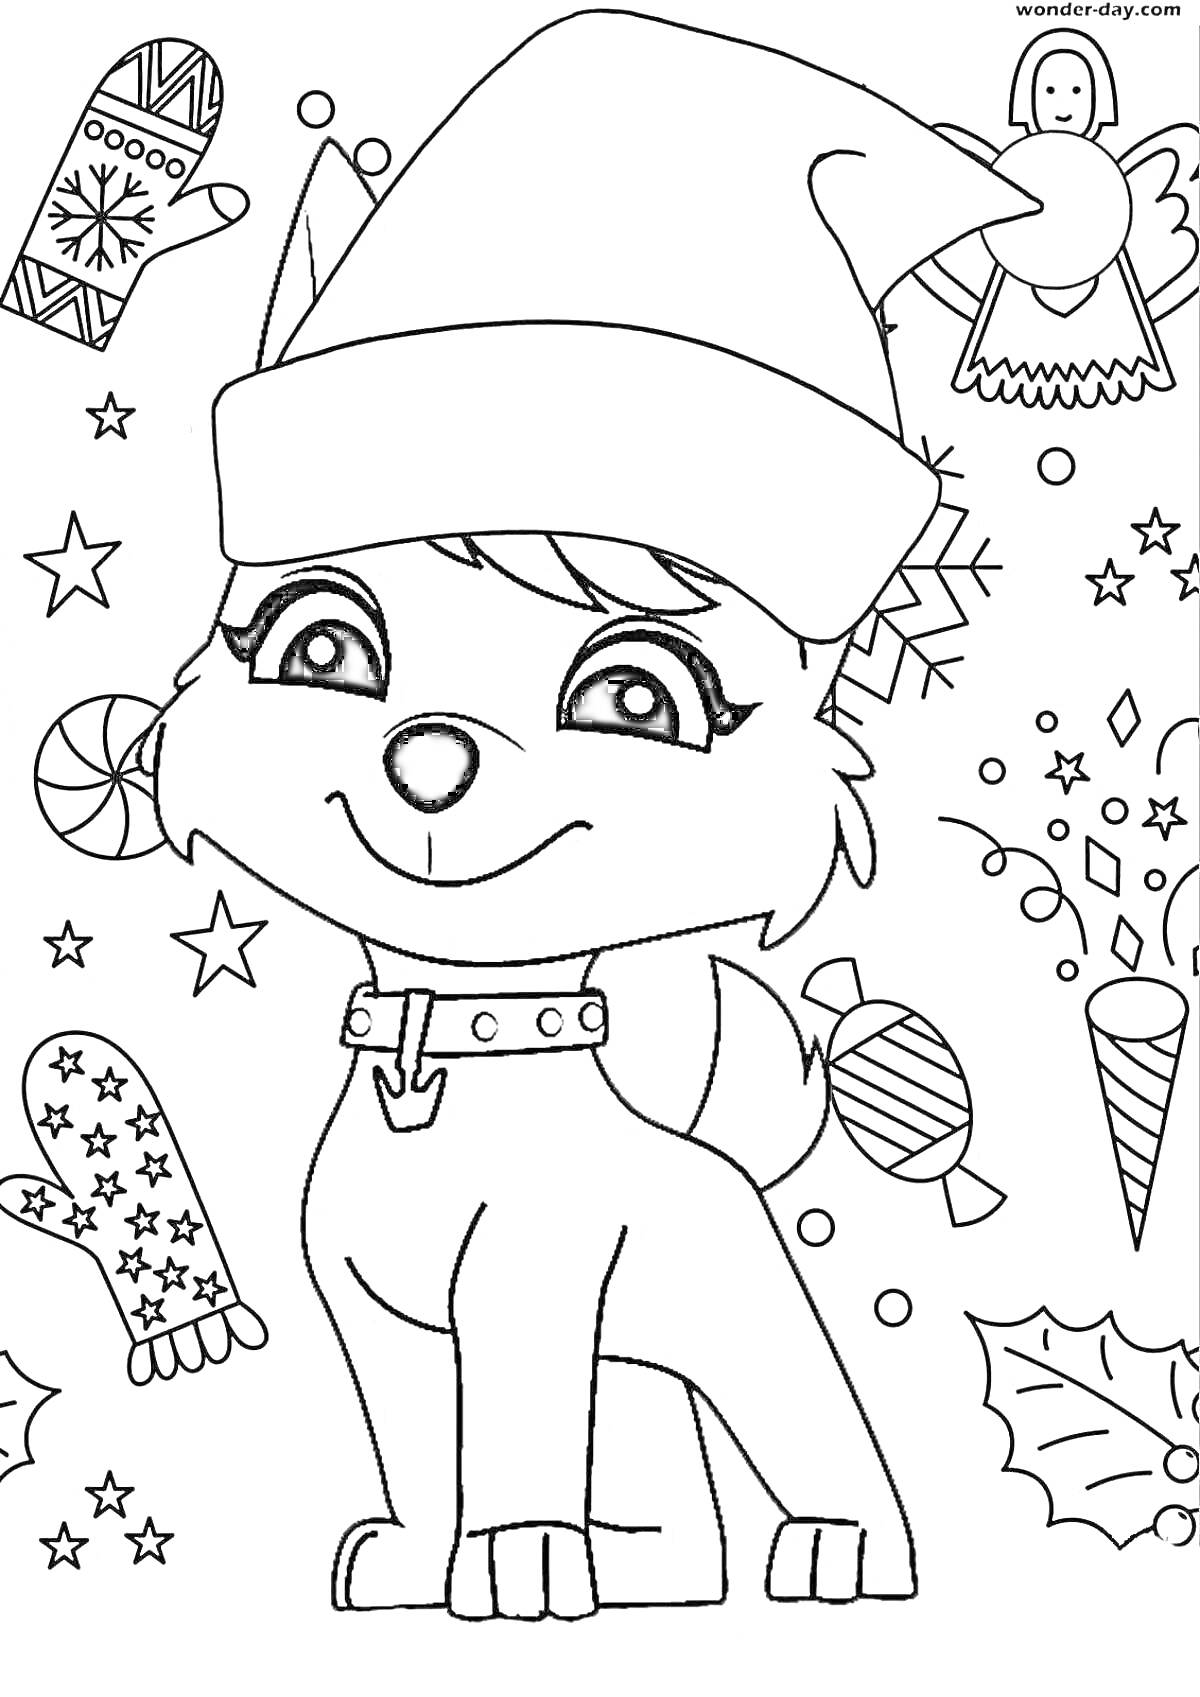 Раскраска Щенок в новогодней шапке с елочными игрушками, варежками и леденцами